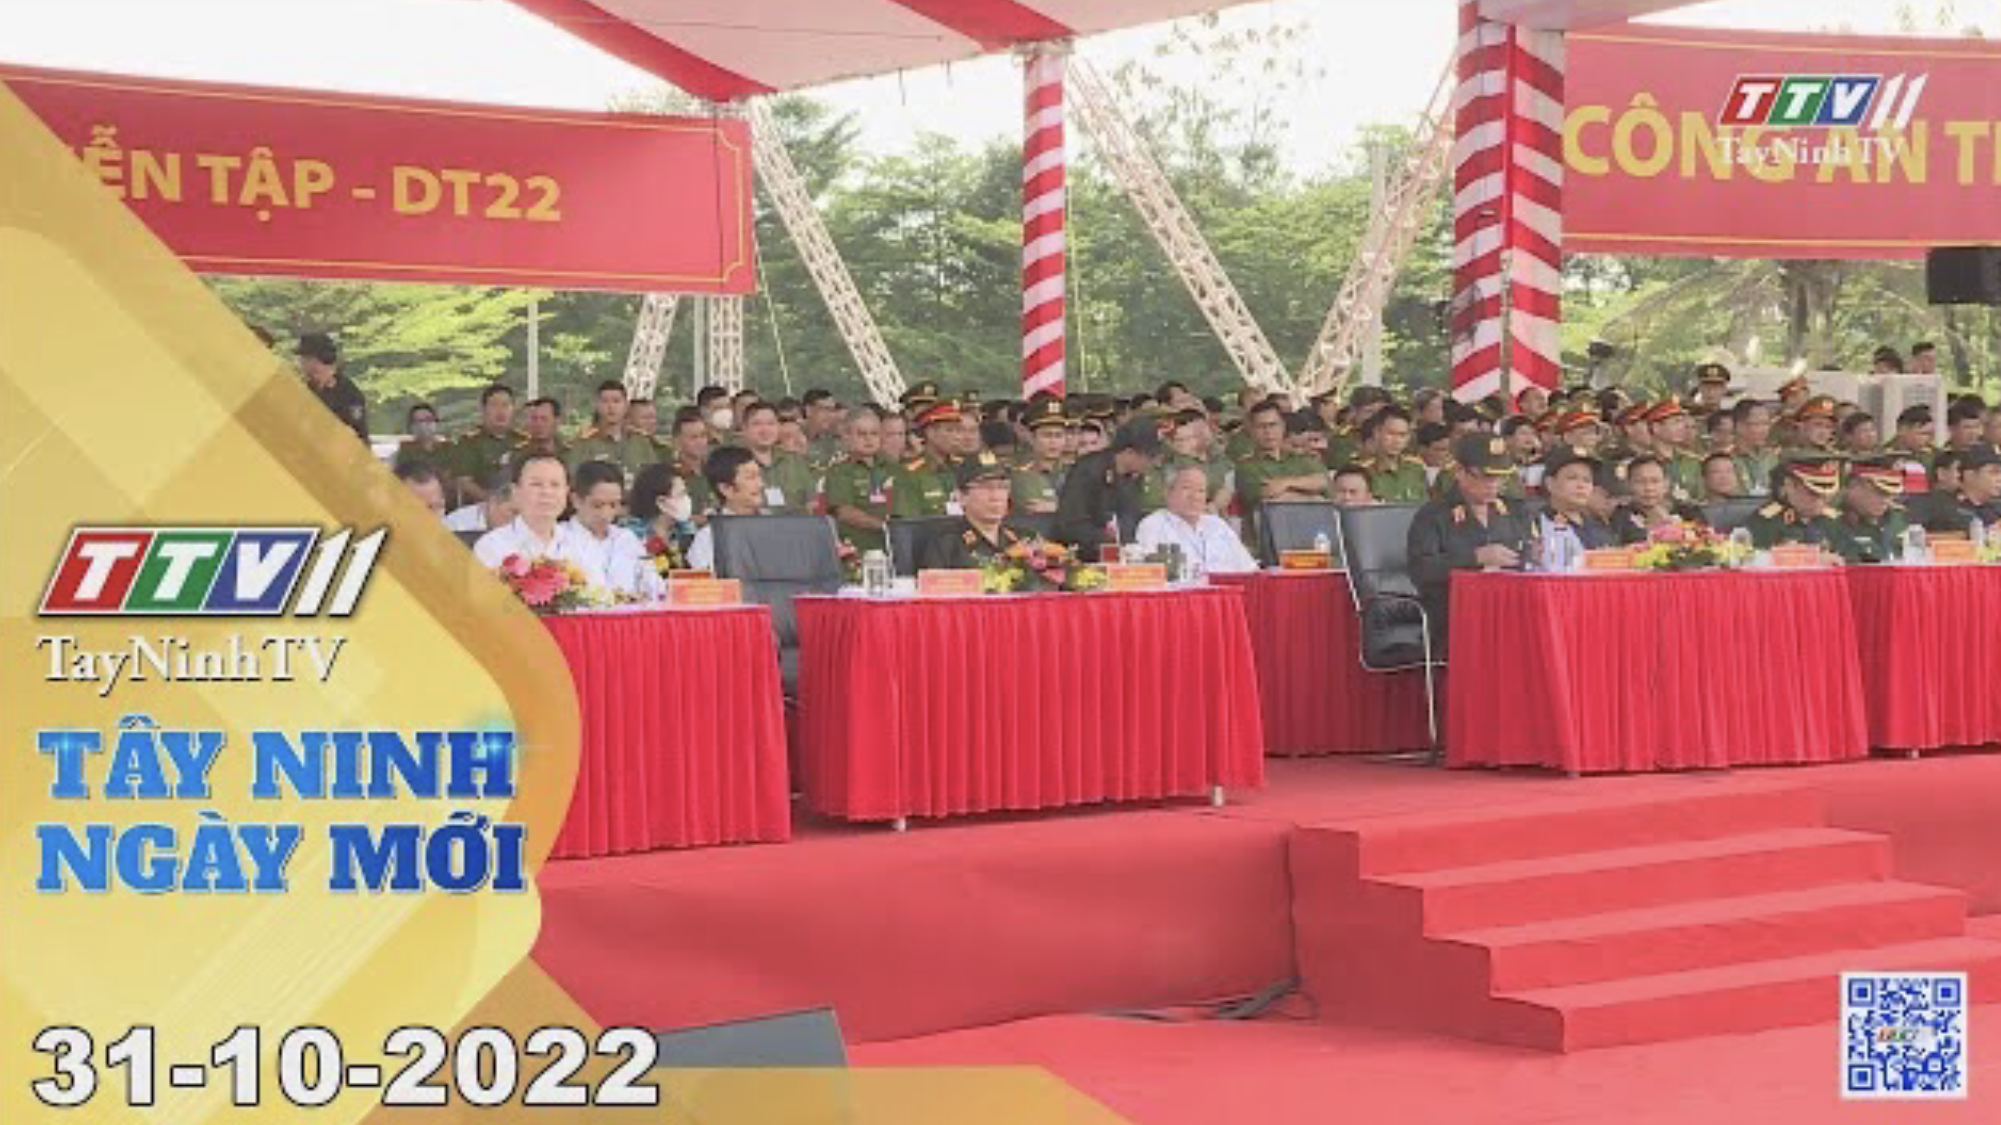 Tây Ninh ngày mới 31-10-2022 | Tin tức hôm nay | TayNinhTV